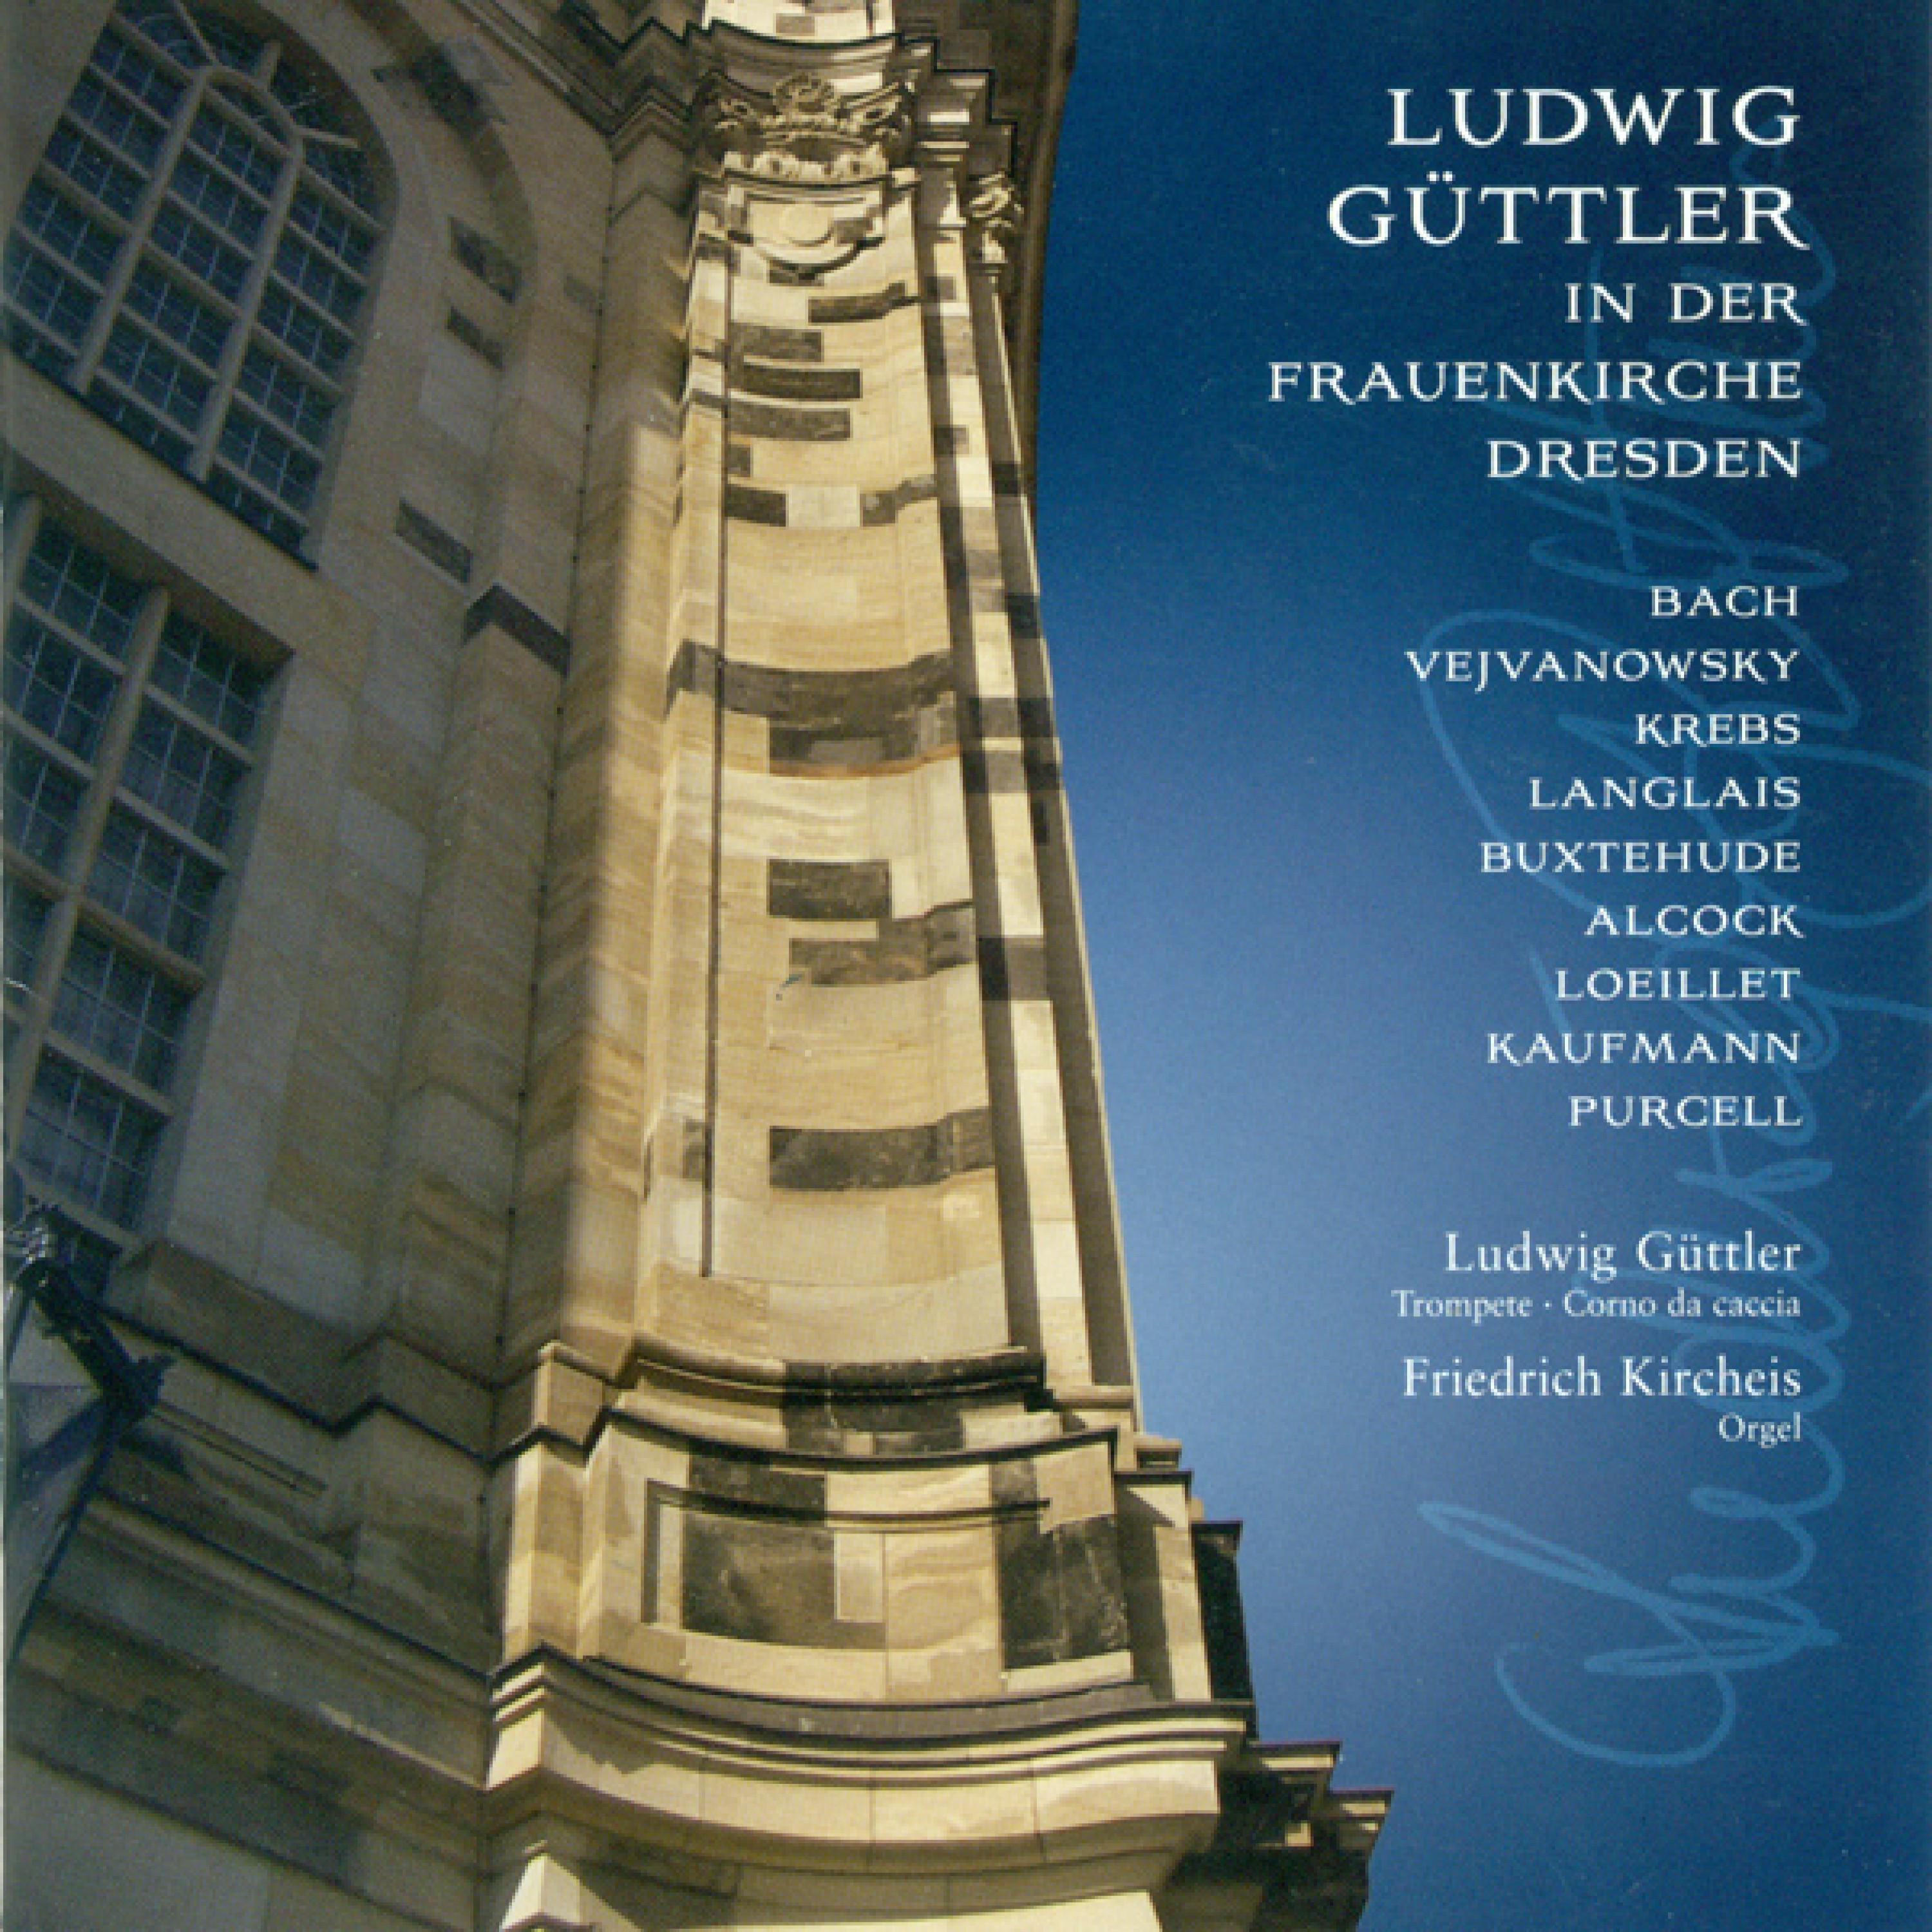 Chorale preludes for Corno da Caccia and Organ: No. 35, "Nun komm, der Heiden Heiland", BuxWV 211